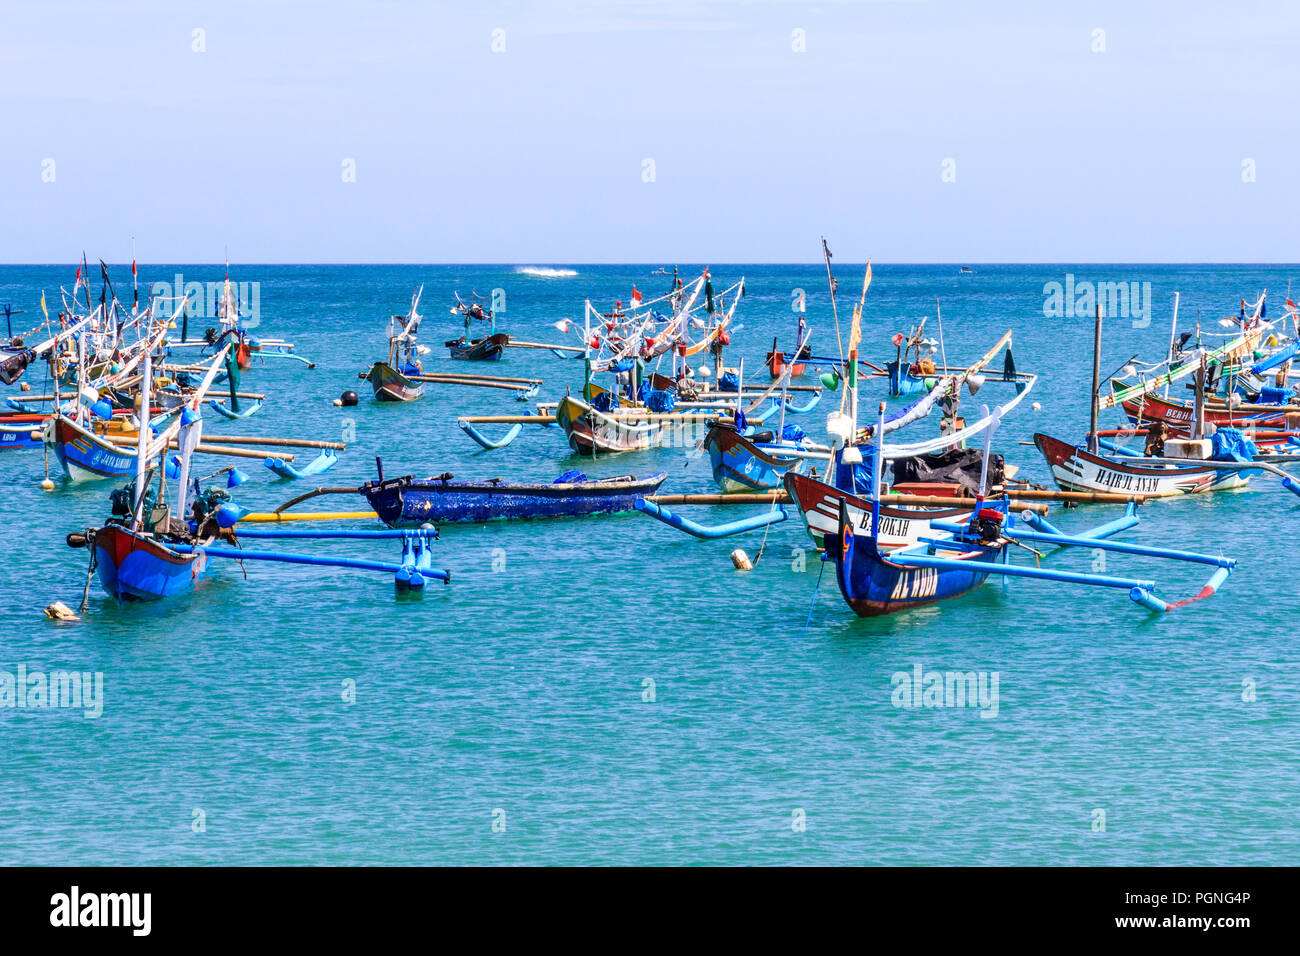 Bali, Indonesien - 30 Mai 2017: traditionellen Balinesischen Fischerbooten aus Jimbaran Strand. Sie werden als Jukungs bekannt. Stockfoto